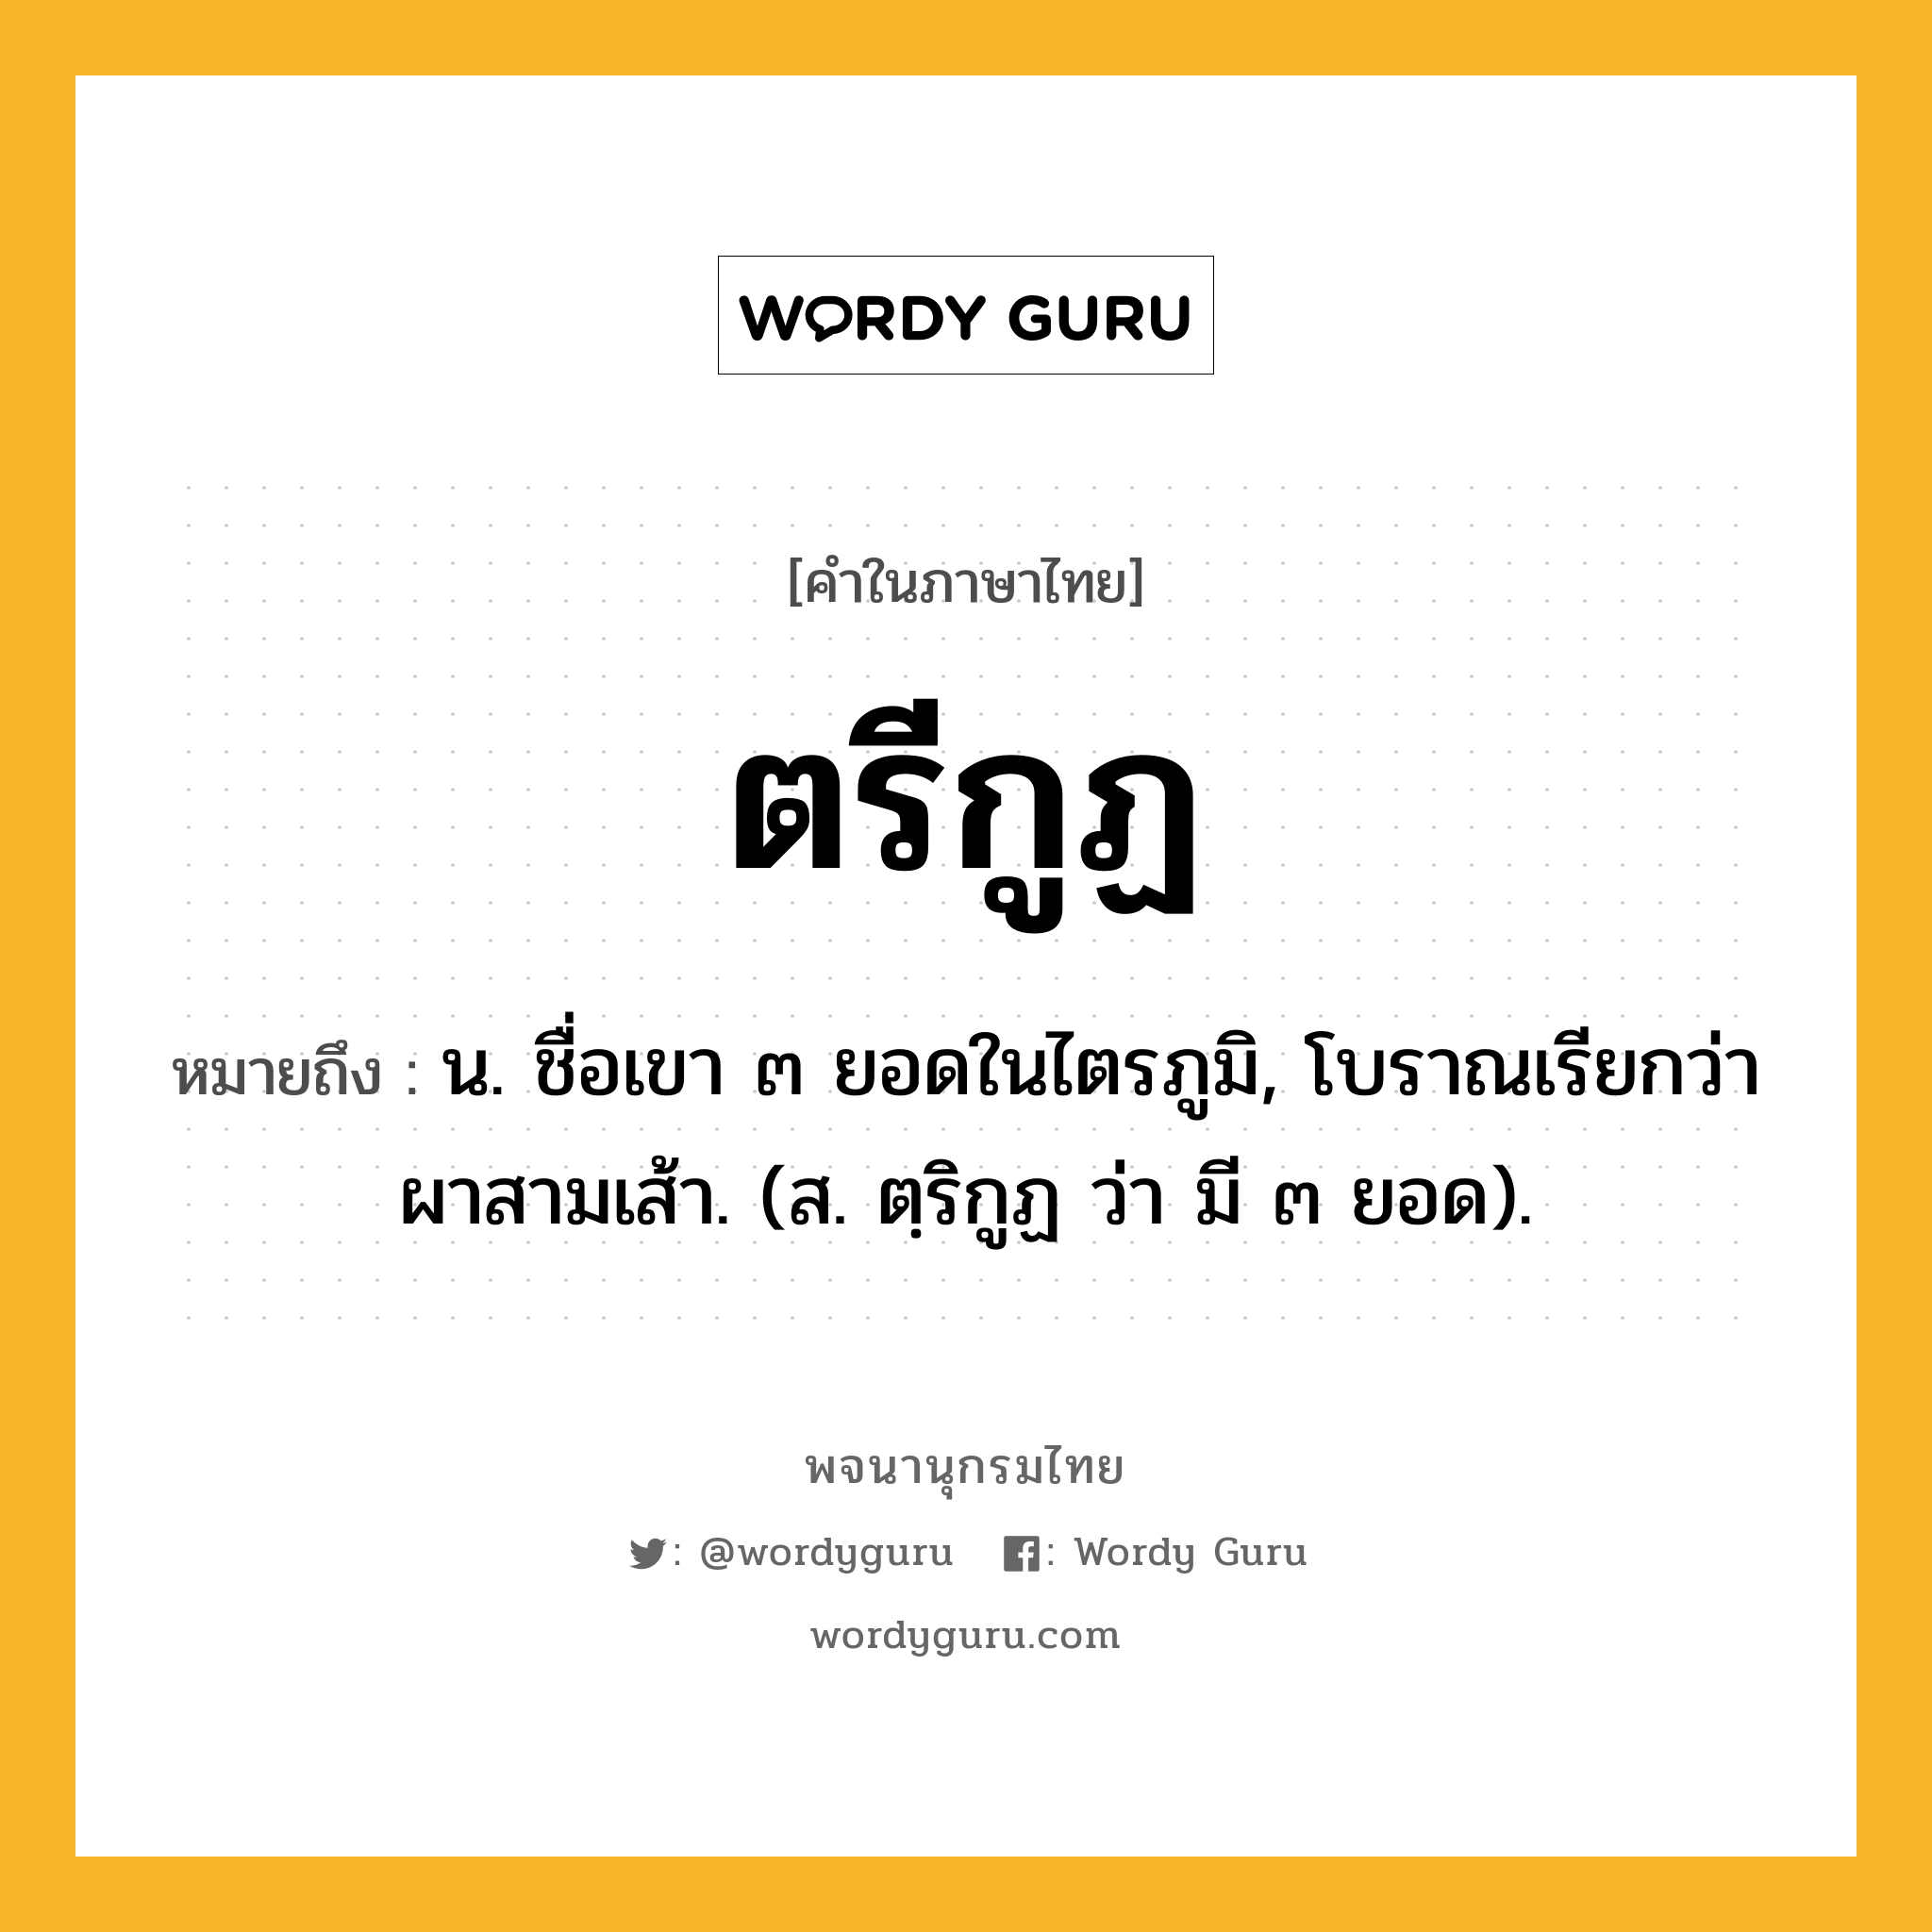 ตรีกูฏ ความหมาย หมายถึงอะไร?, คำในภาษาไทย ตรีกูฏ หมายถึง น. ชื่อเขา ๓ ยอดในไตรภูมิ, โบราณเรียกว่า ผาสามเส้า. (ส. ตฺริกูฏ ว่า มี ๓ ยอด).